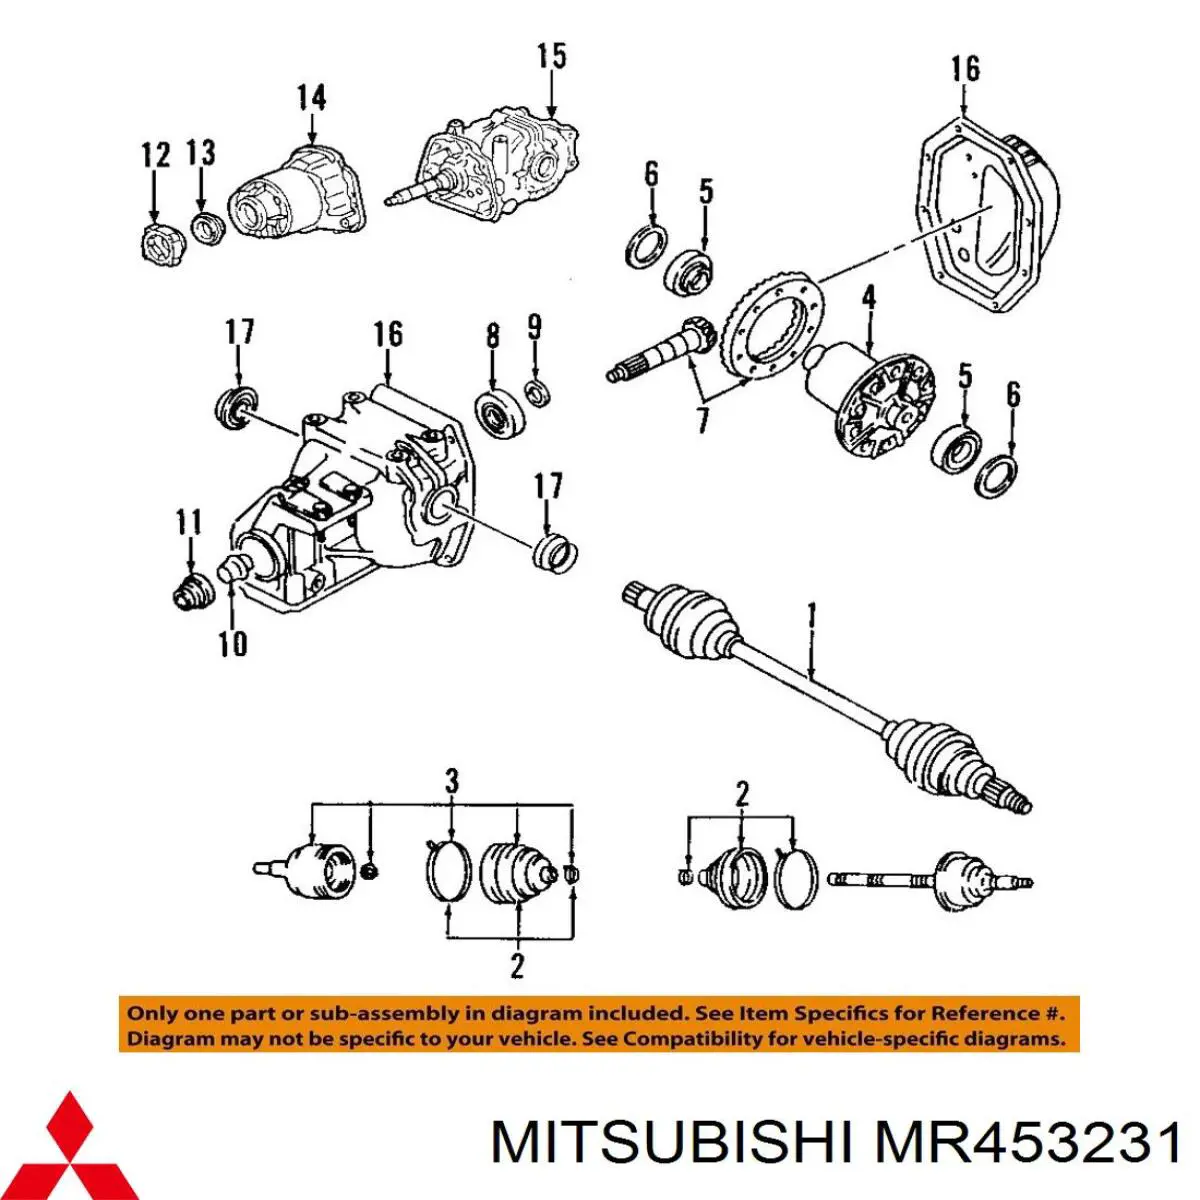 MR453231 Mitsubishi cojinete, palier, eje trasero, interior